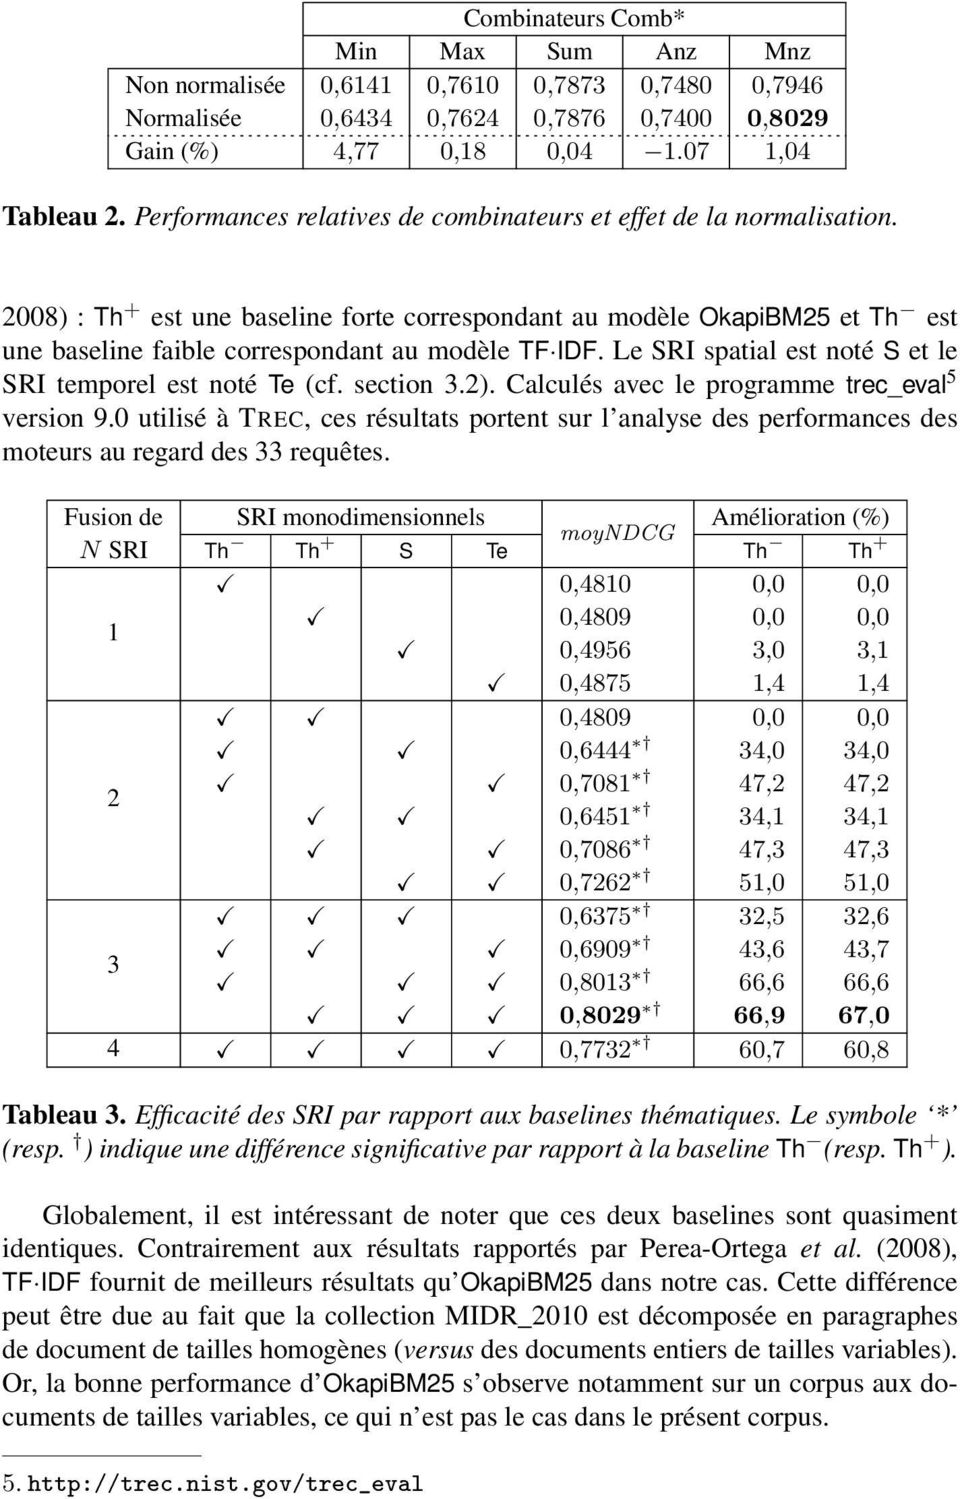 Le SRI spatial est noté S et le SRI temporel est noté Te (cf. section 3.2). Calculés avec le programme trec_eval 5 version 9.